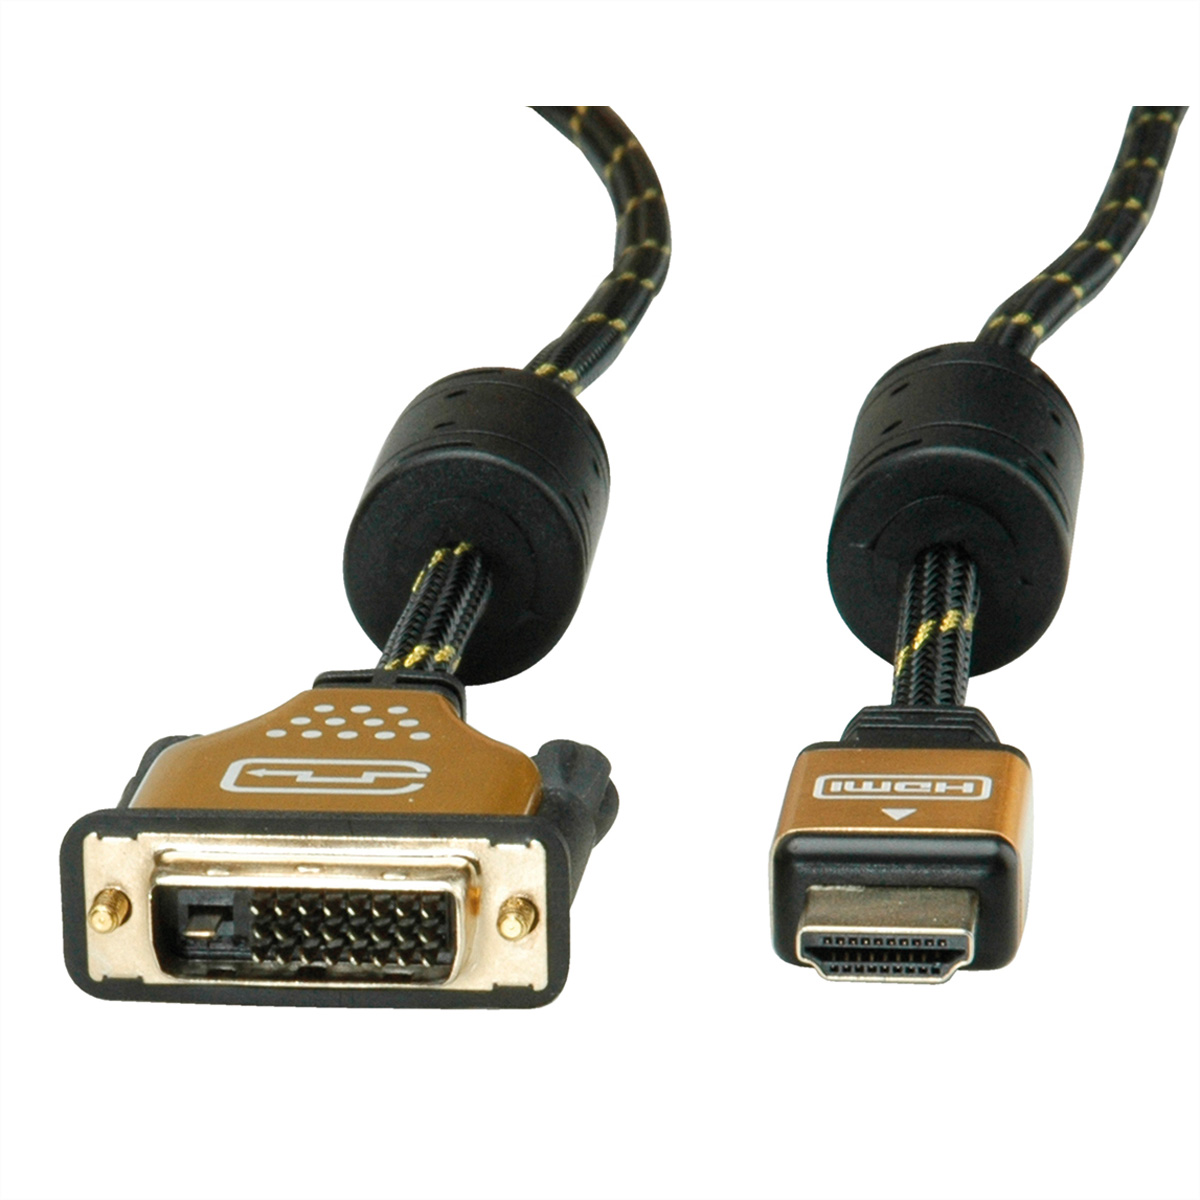 DVI ST/ST, Monitorkabel HDMI, GOLD m (24+1) 7,5 - HDMI-DVI-Kabel, ROLINE